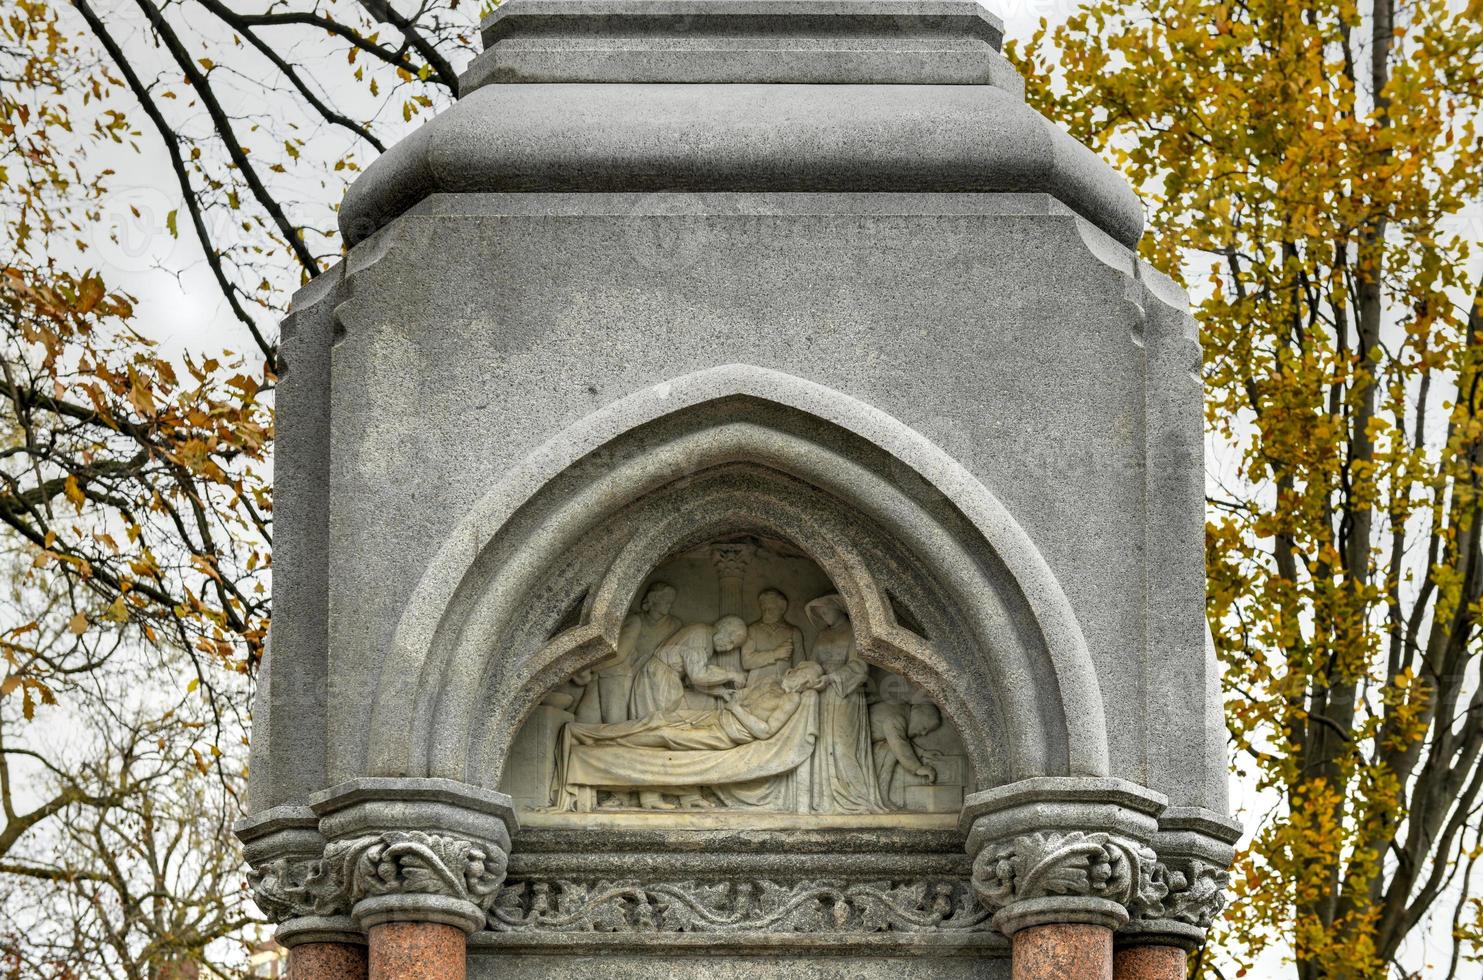 ether monument, ook bekend net zo de mooi zo Samaritaan, is een standbeeld en fontein in de buurt de Noord West hoek van boston openbaar tuin. foto